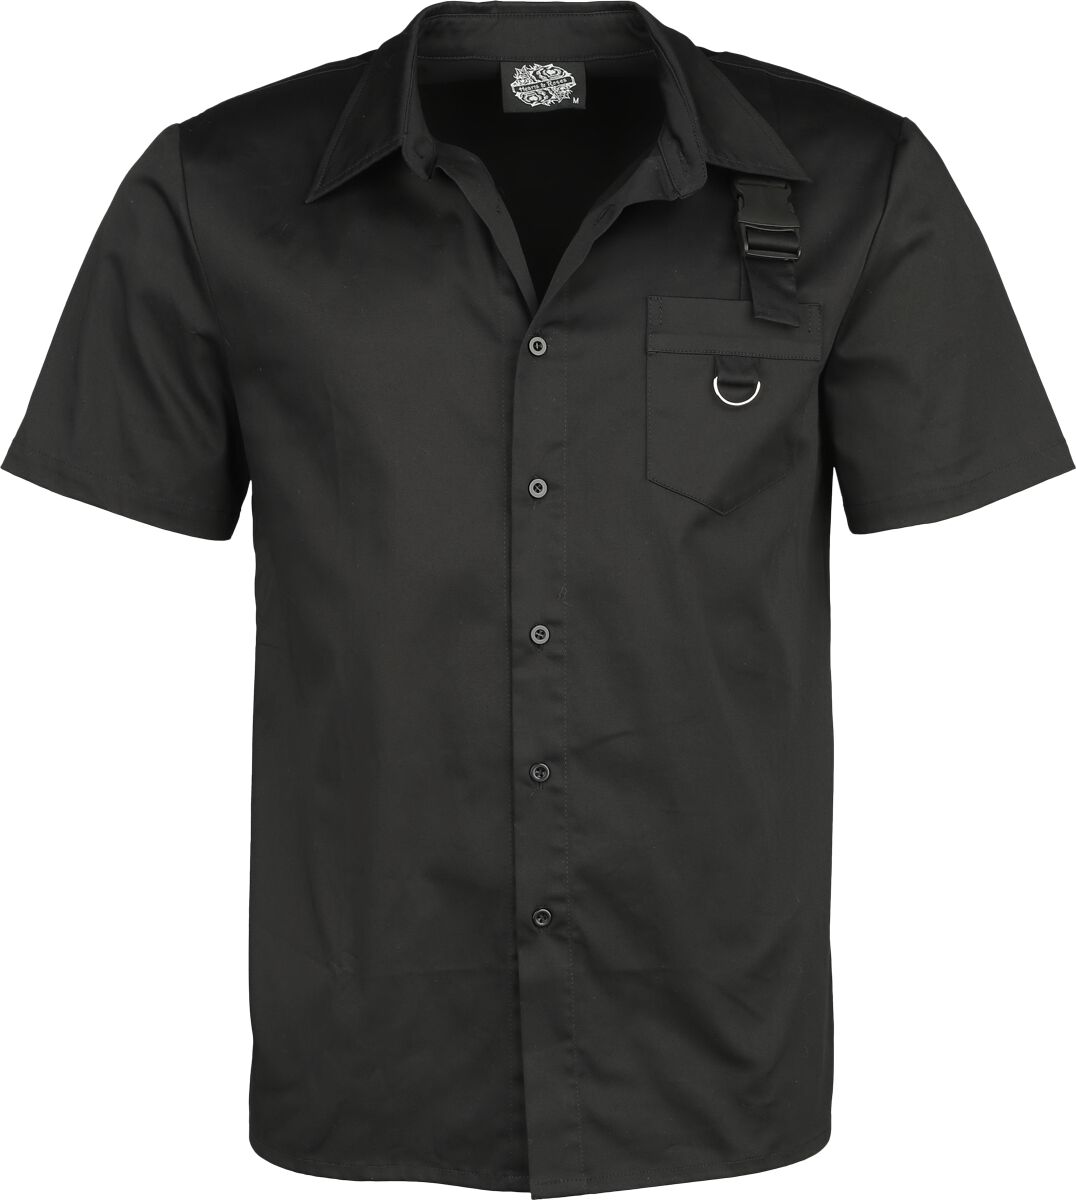 H&R London - Gothic Kurzarmhemd - Black Shirt - S bis 4XL - für Männer - Größe S - schwarz